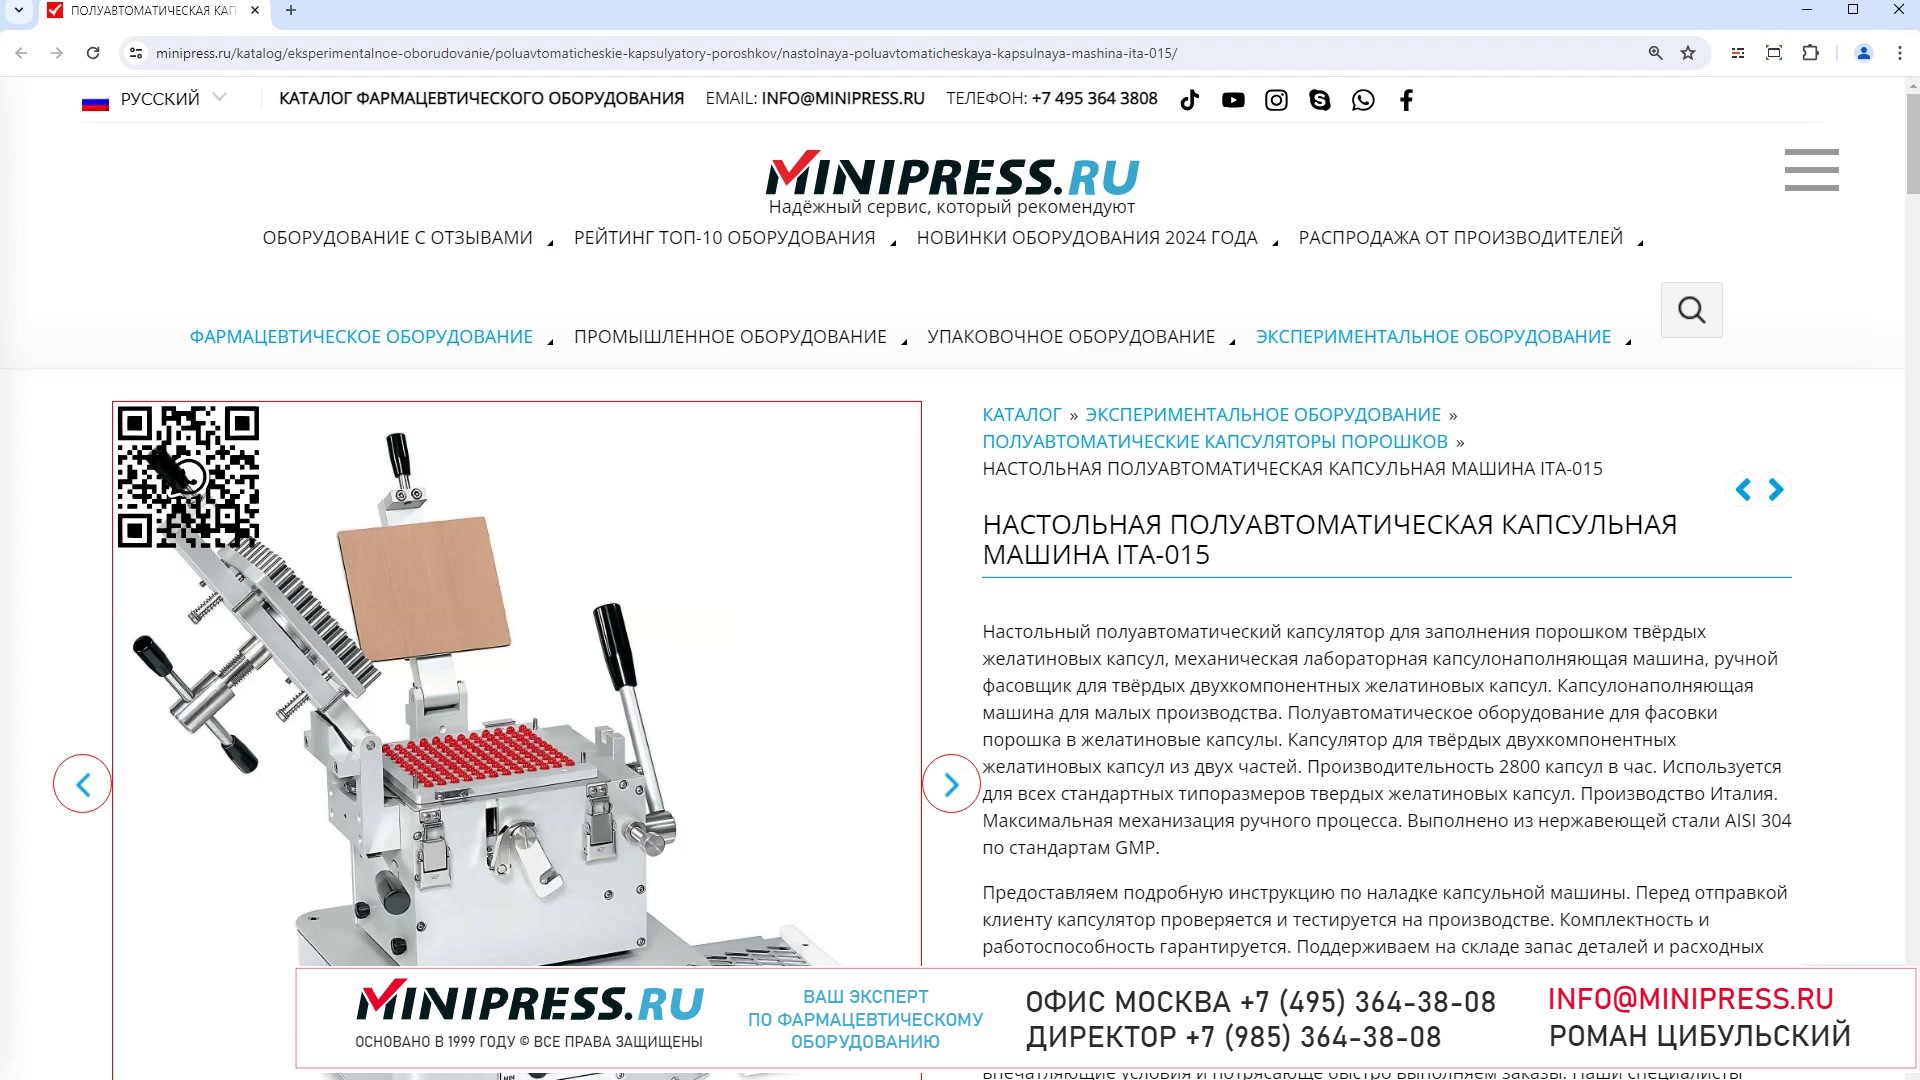 Minipress.ru Настольная полуавтоматическая капсульная машина ITA-015